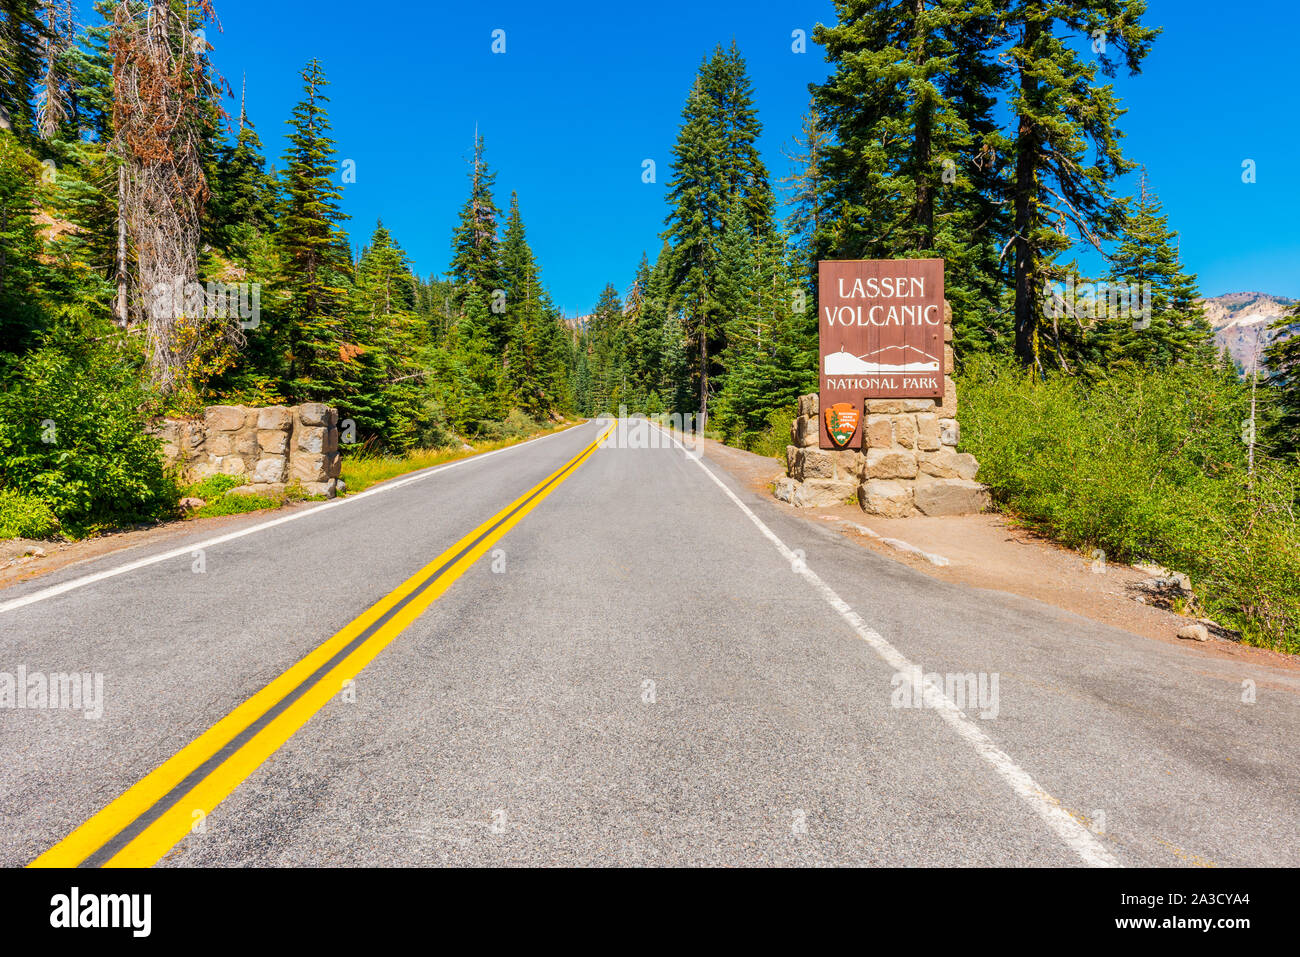 Eingangsschild zu Lassen Volcanic National Park Kalifornien USA Stockfoto